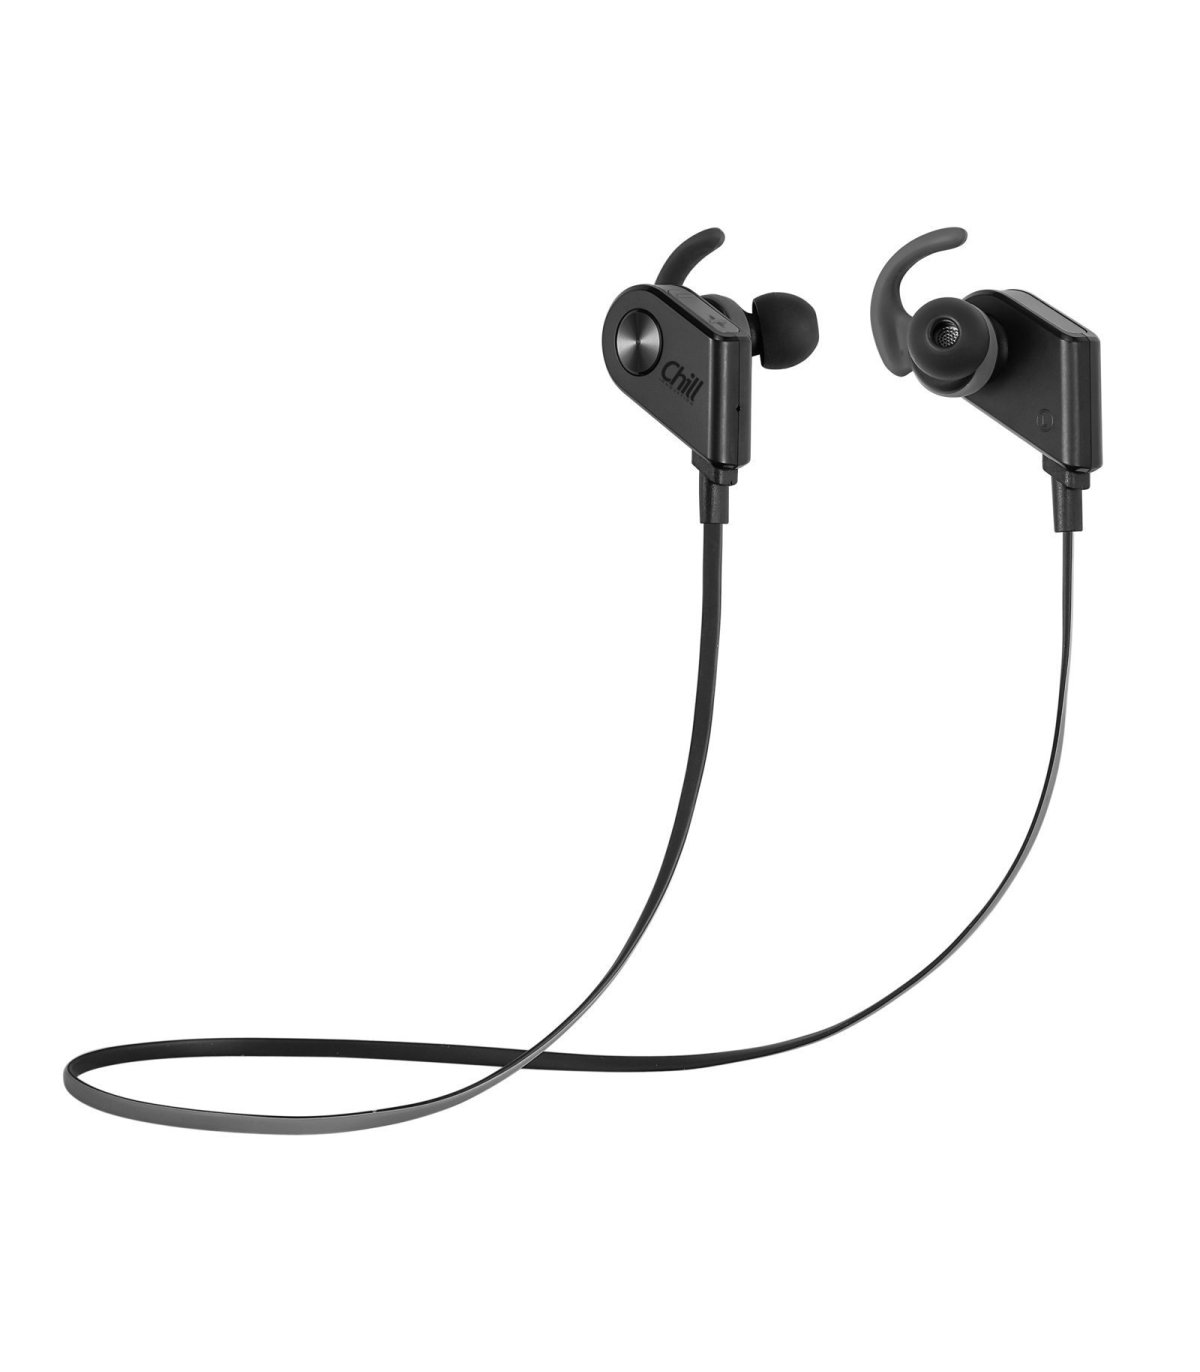 zwemmen ongeluk aankomen Chill V8 AptX Wireless Bluetooth In-Ear Sport Headphones, Black